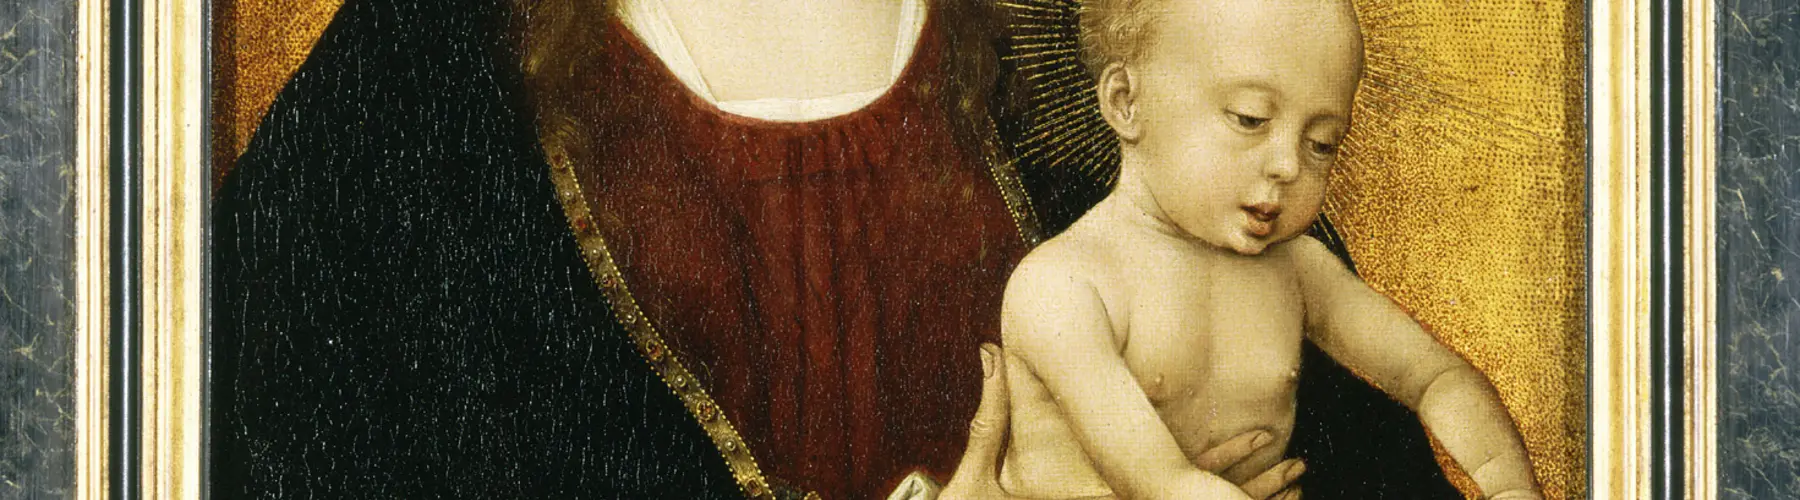 Virgin and Child (ca. 1460) by Rogier van der Weyden